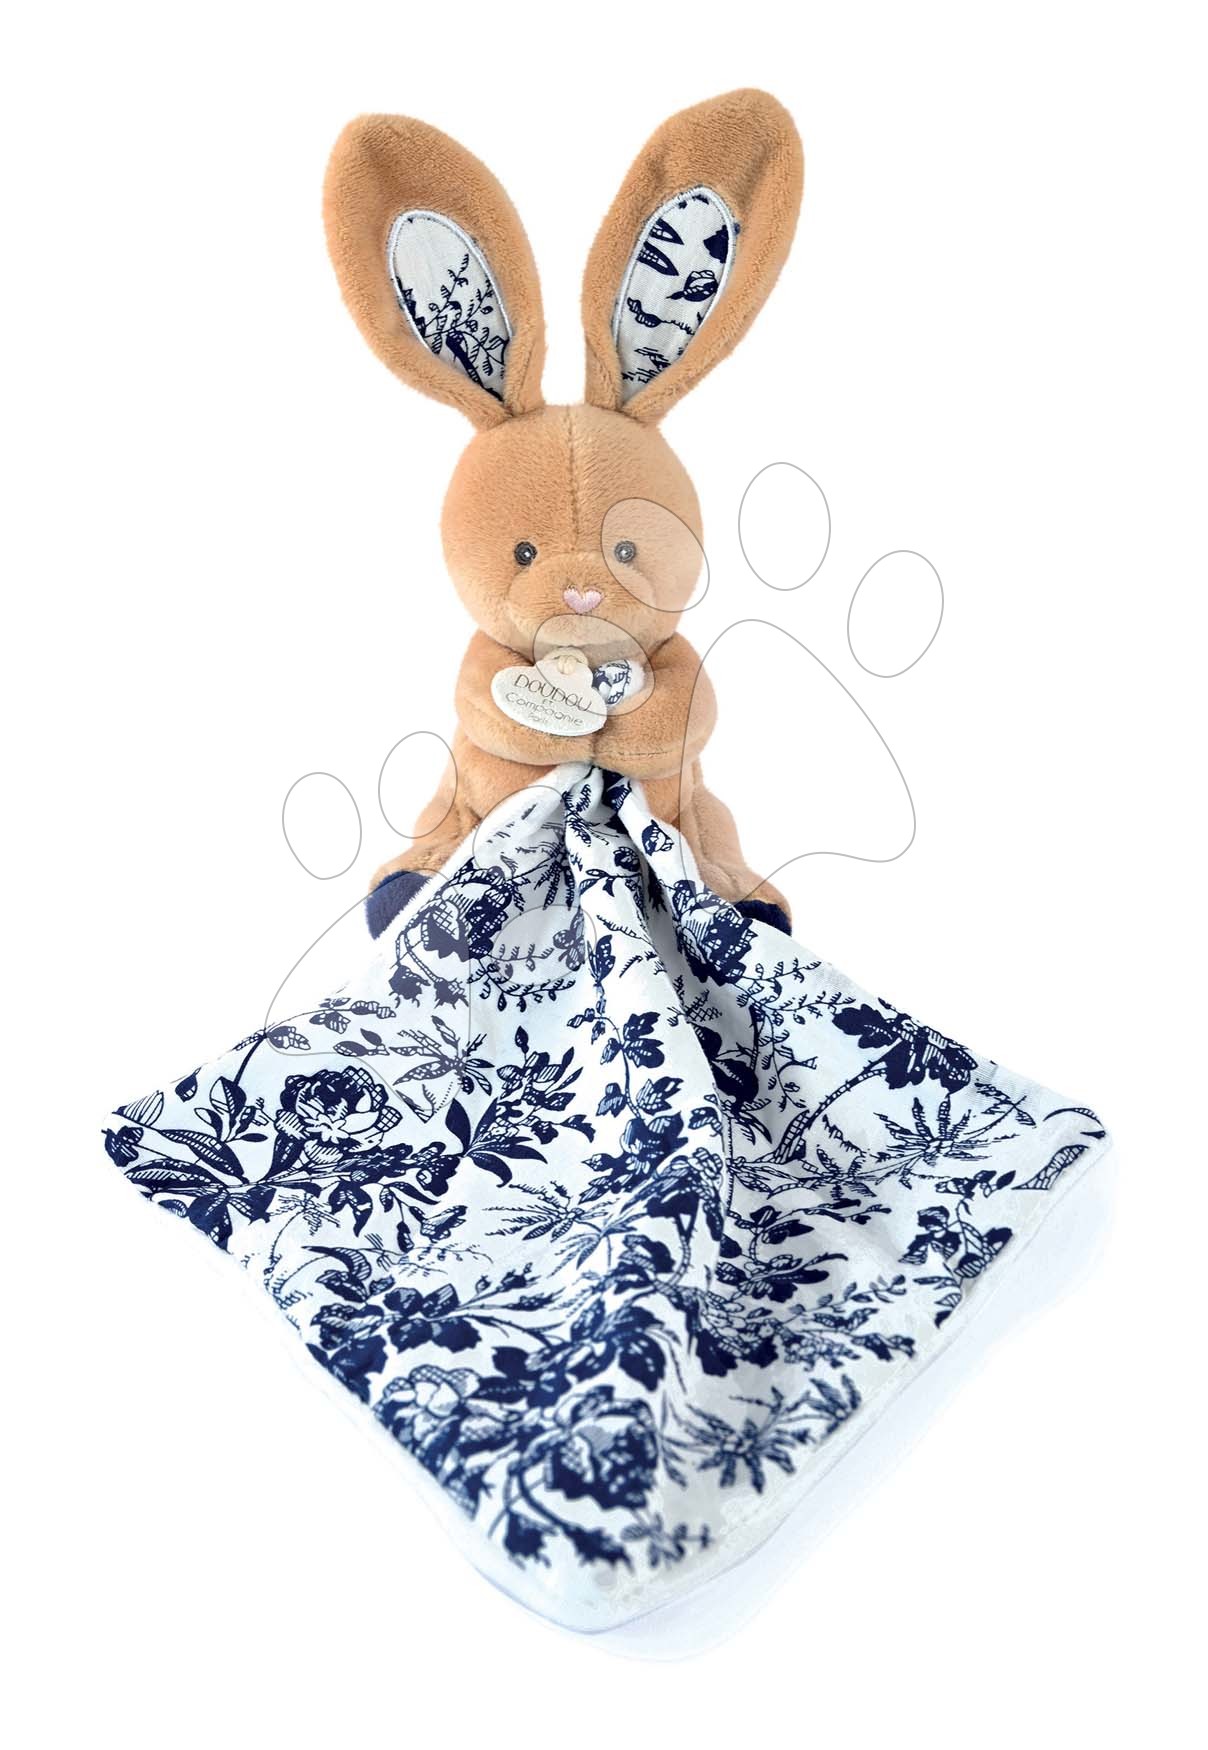 Plüss nyuszi dédelgetésre Bunny Navy Boh'aime Doudou et Compagnie kék 12 cm ajándékcsomagolásban 0 hó-tól Baba játék webáruház - játék rendelés online